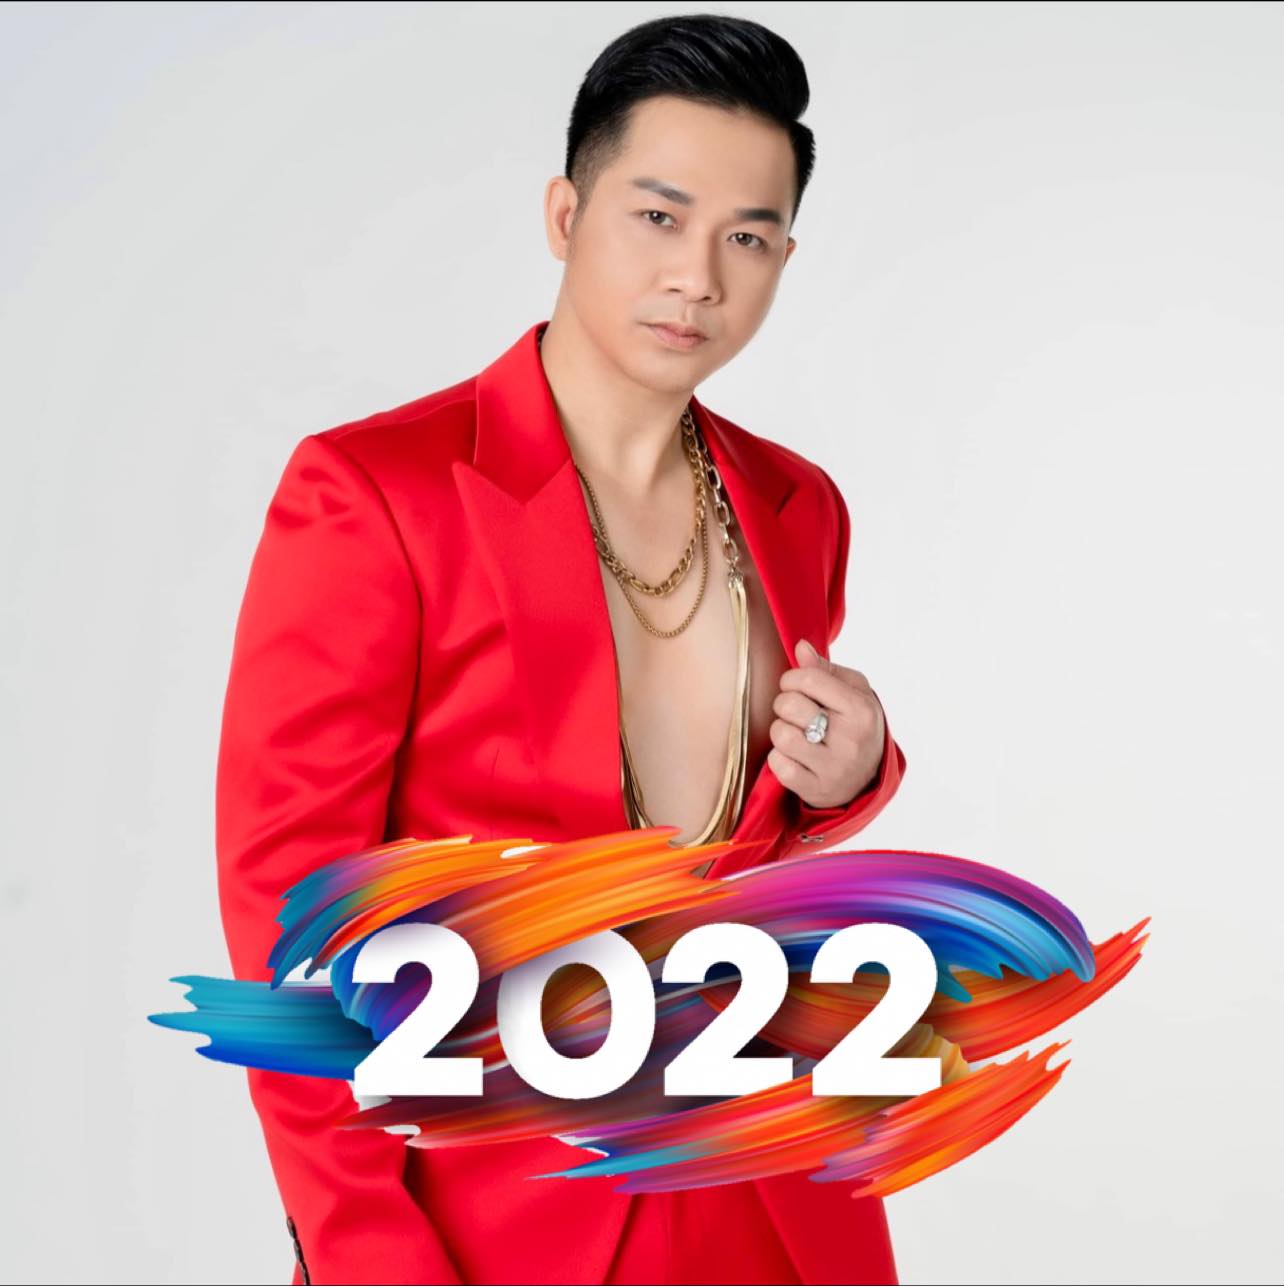 Lời chúc mừng năm mới 2022 ý nghĩa, lắng đọng cảm xúc từ dàn sao Việt đến khán giả - Ảnh 6.